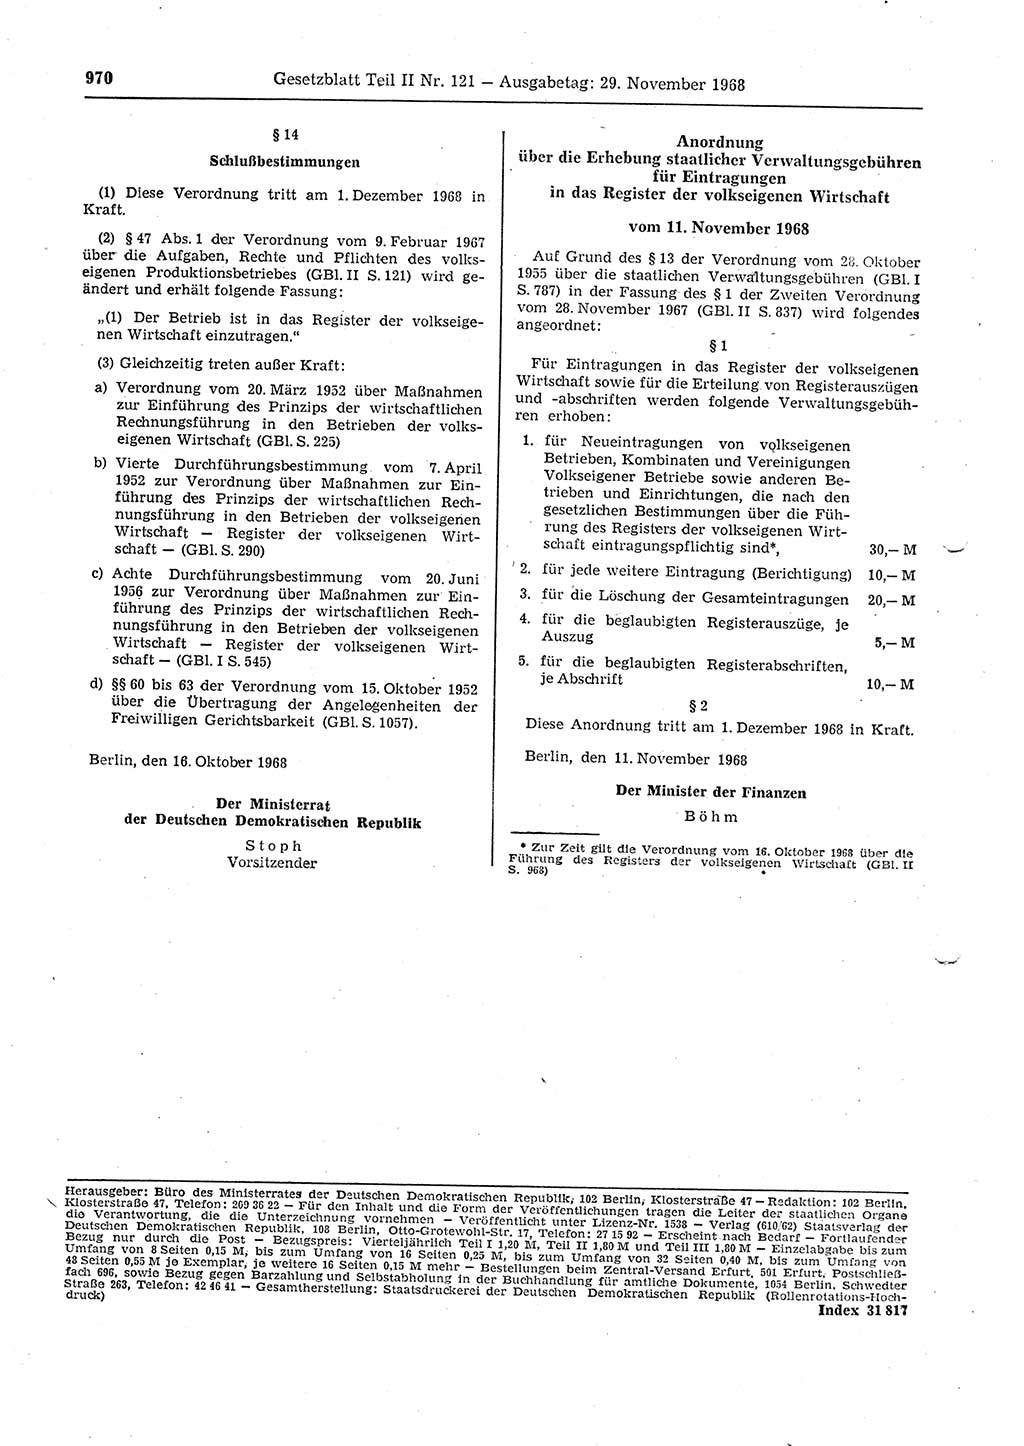 Gesetzblatt (GBl.) der Deutschen Demokratischen Republik (DDR) Teil ⅠⅠ 1968, Seite 970 (GBl. DDR ⅠⅠ 1968, S. 970)